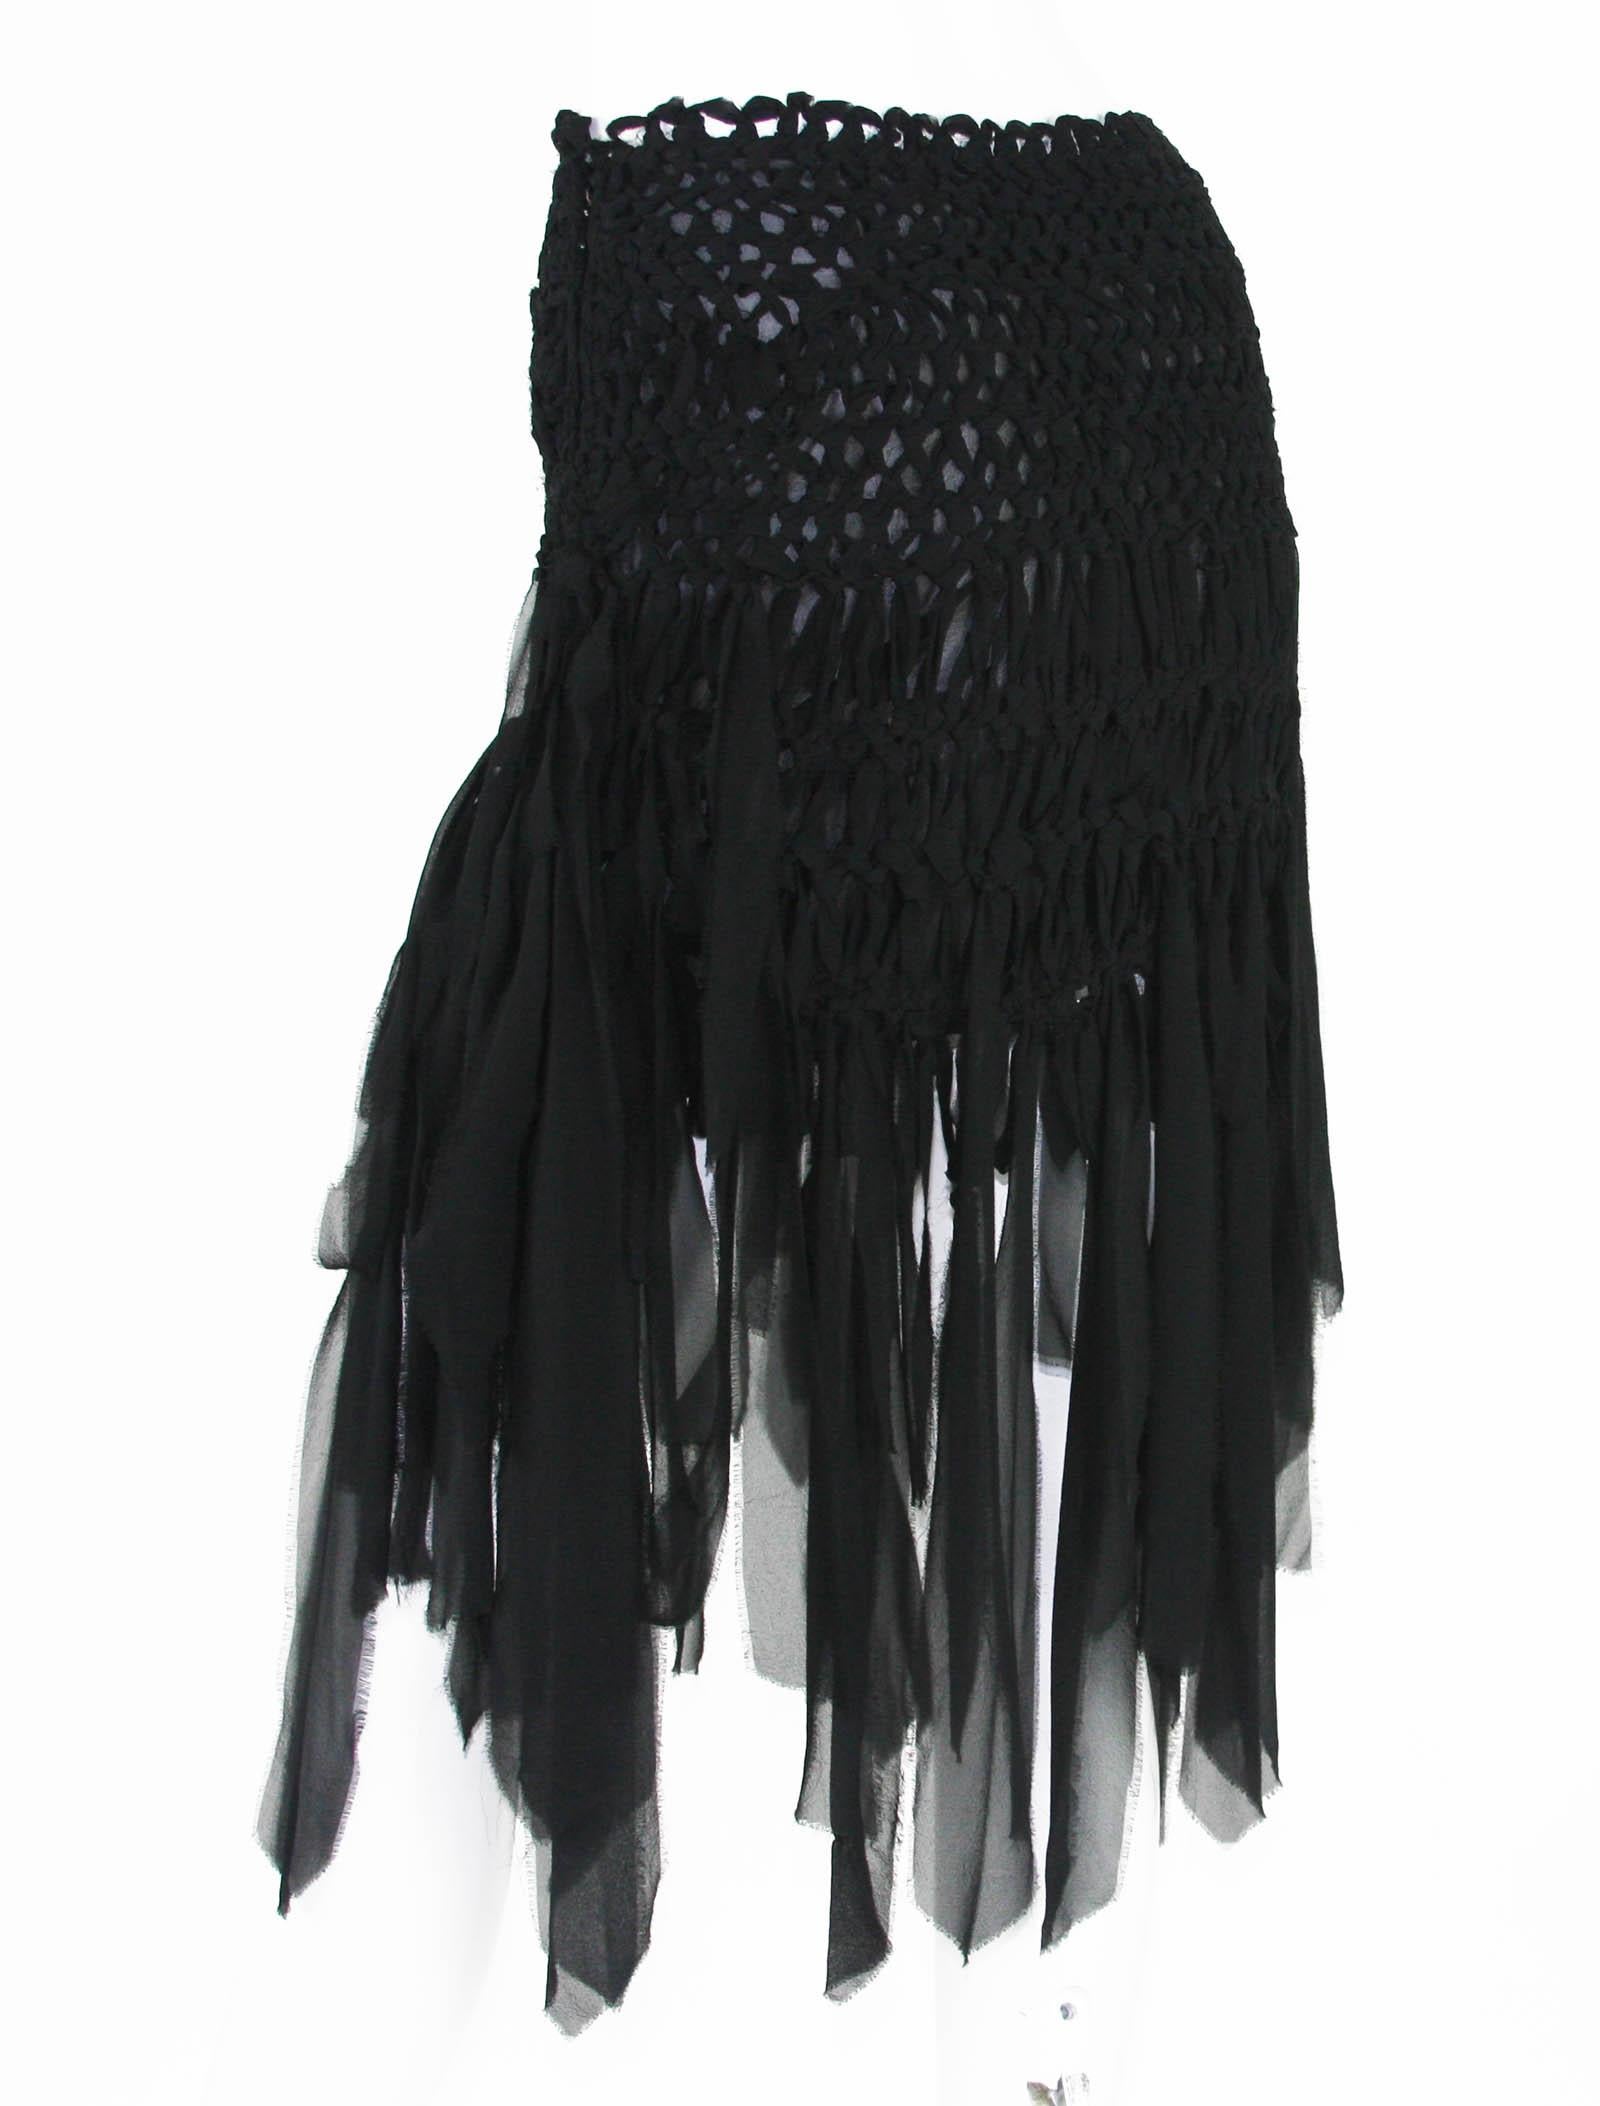 Tom Ford for Yves Saint Laurent Mini Black Silk Woven Fringe Skirt, S / S 2002 2